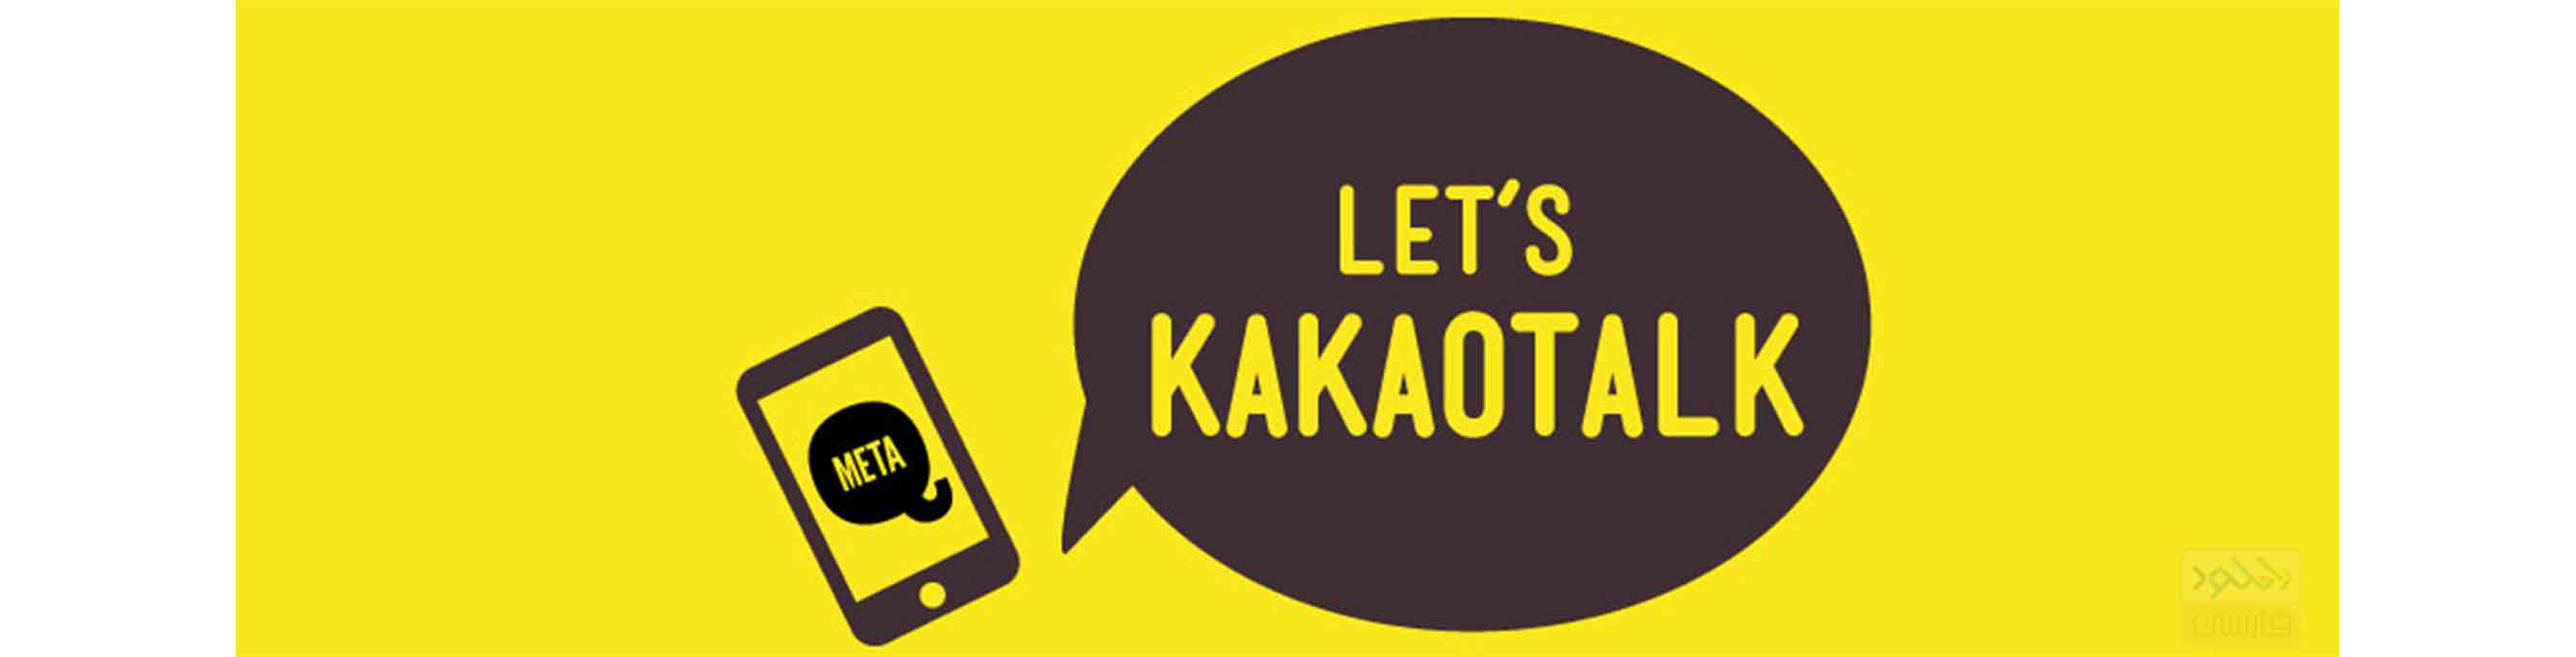 دانلود نرم افزار Kakao Talk تماس صوتی و تصویری رایگان برای اندروید